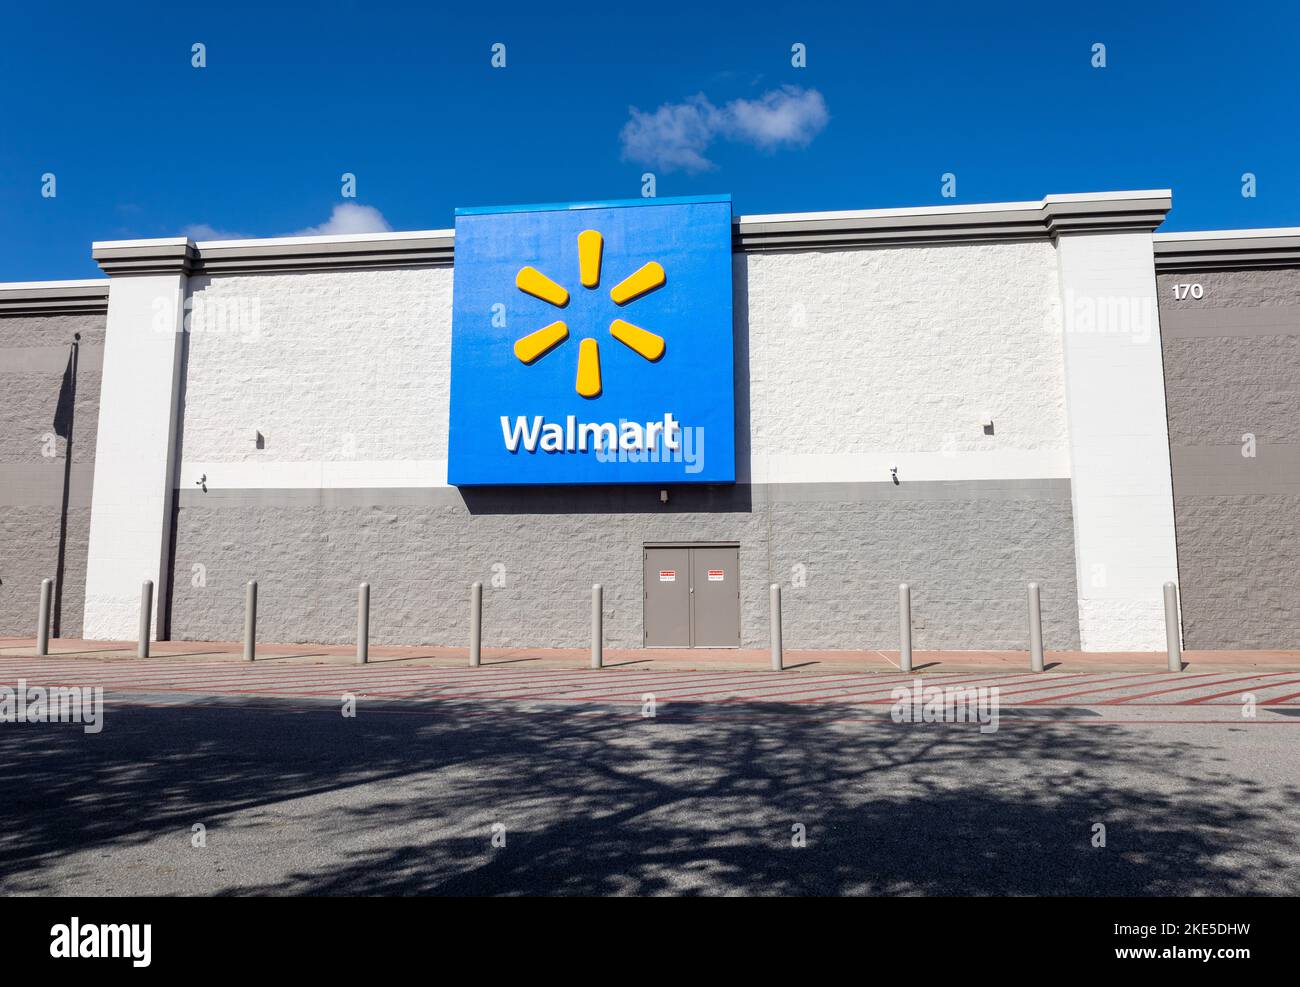 Walmart Superstore Gulf Shores Alabama Logotipo corporativo en el exterior de la tienda Foto de stock